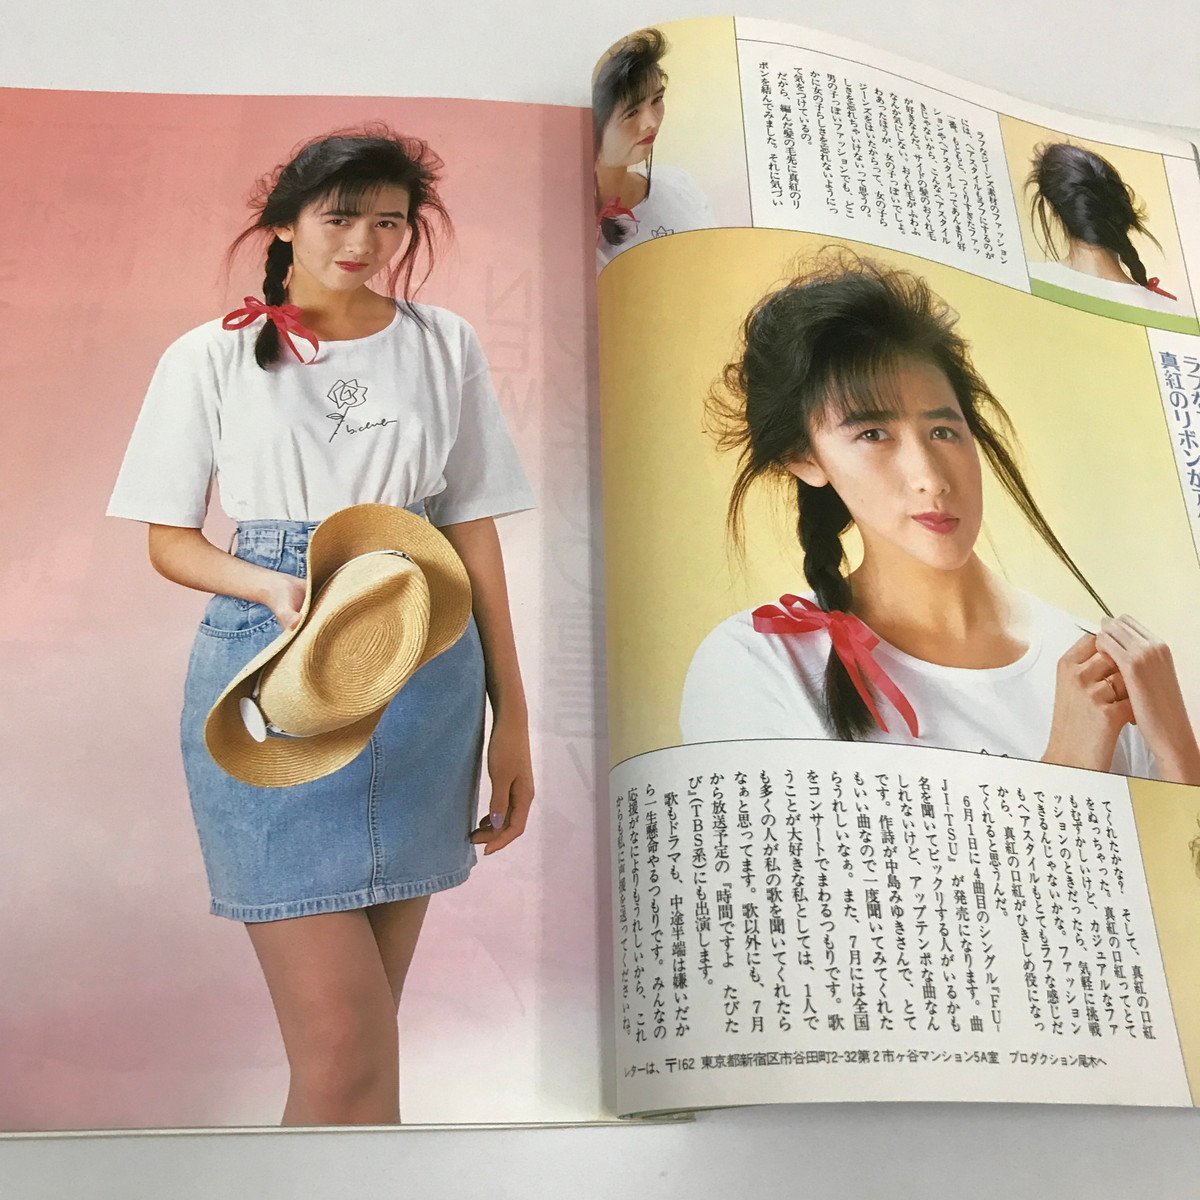 NC/L/ shining star hair catalog 1988 year 7 month number / Shueisha / cover : Asaka Yui / appendix missing / Kudo Shizuka Saito Yuki Oginome Yoko Sakai Noriko dump Matsumoto / idol 